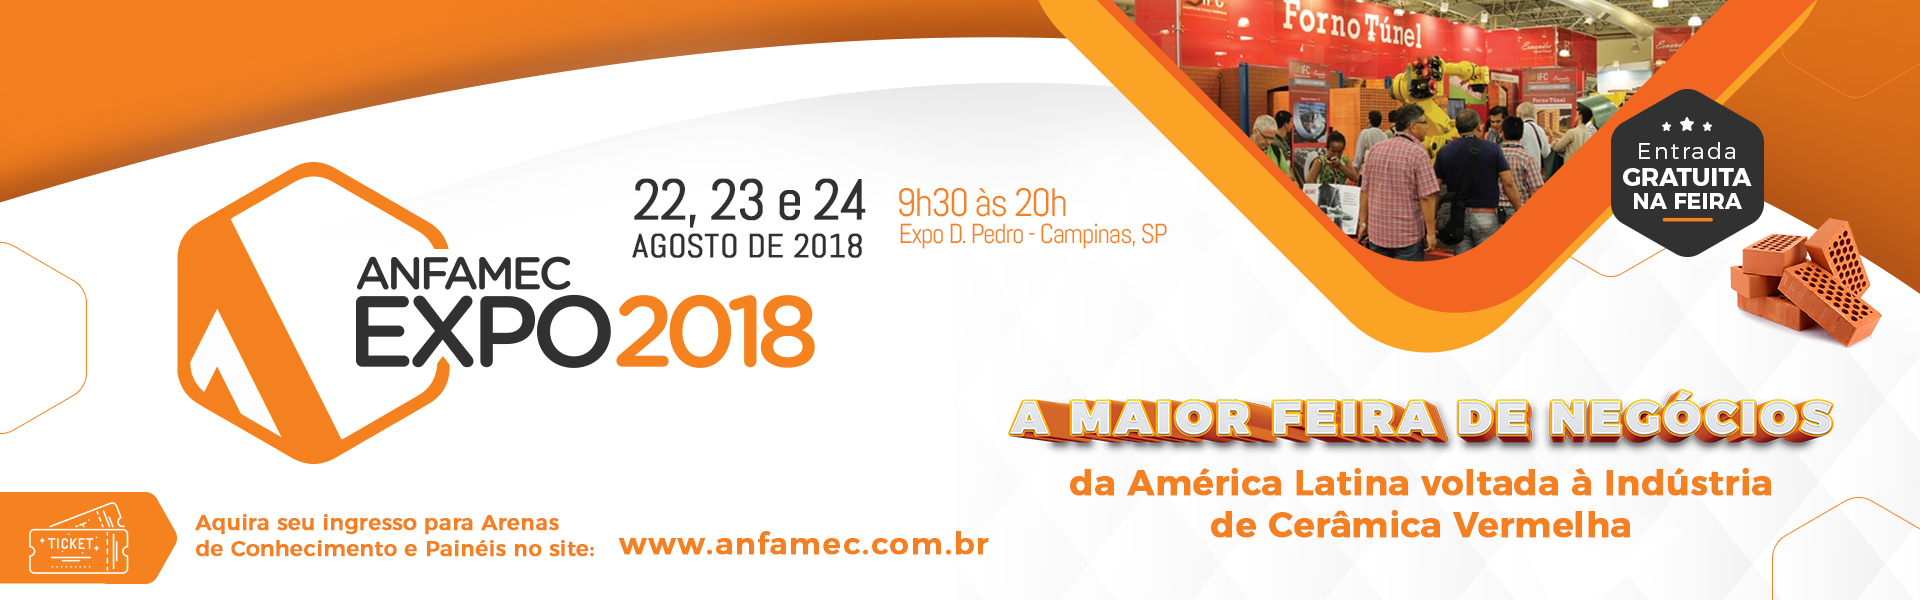 Anfamec Expo 2018 (1)